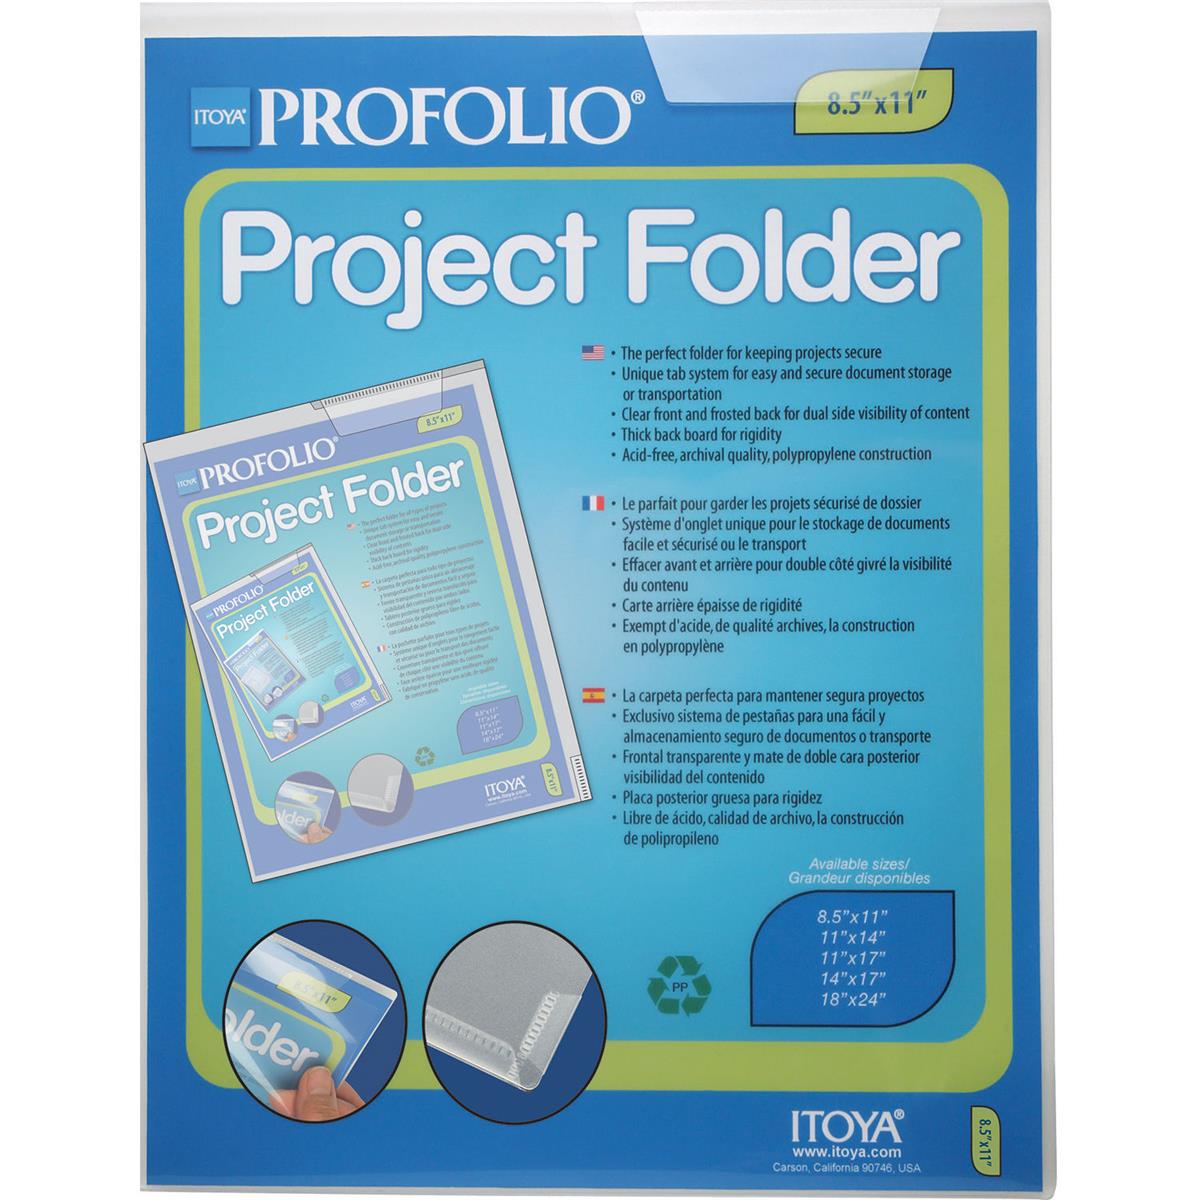 Image of Itoya Profolio Project Folder